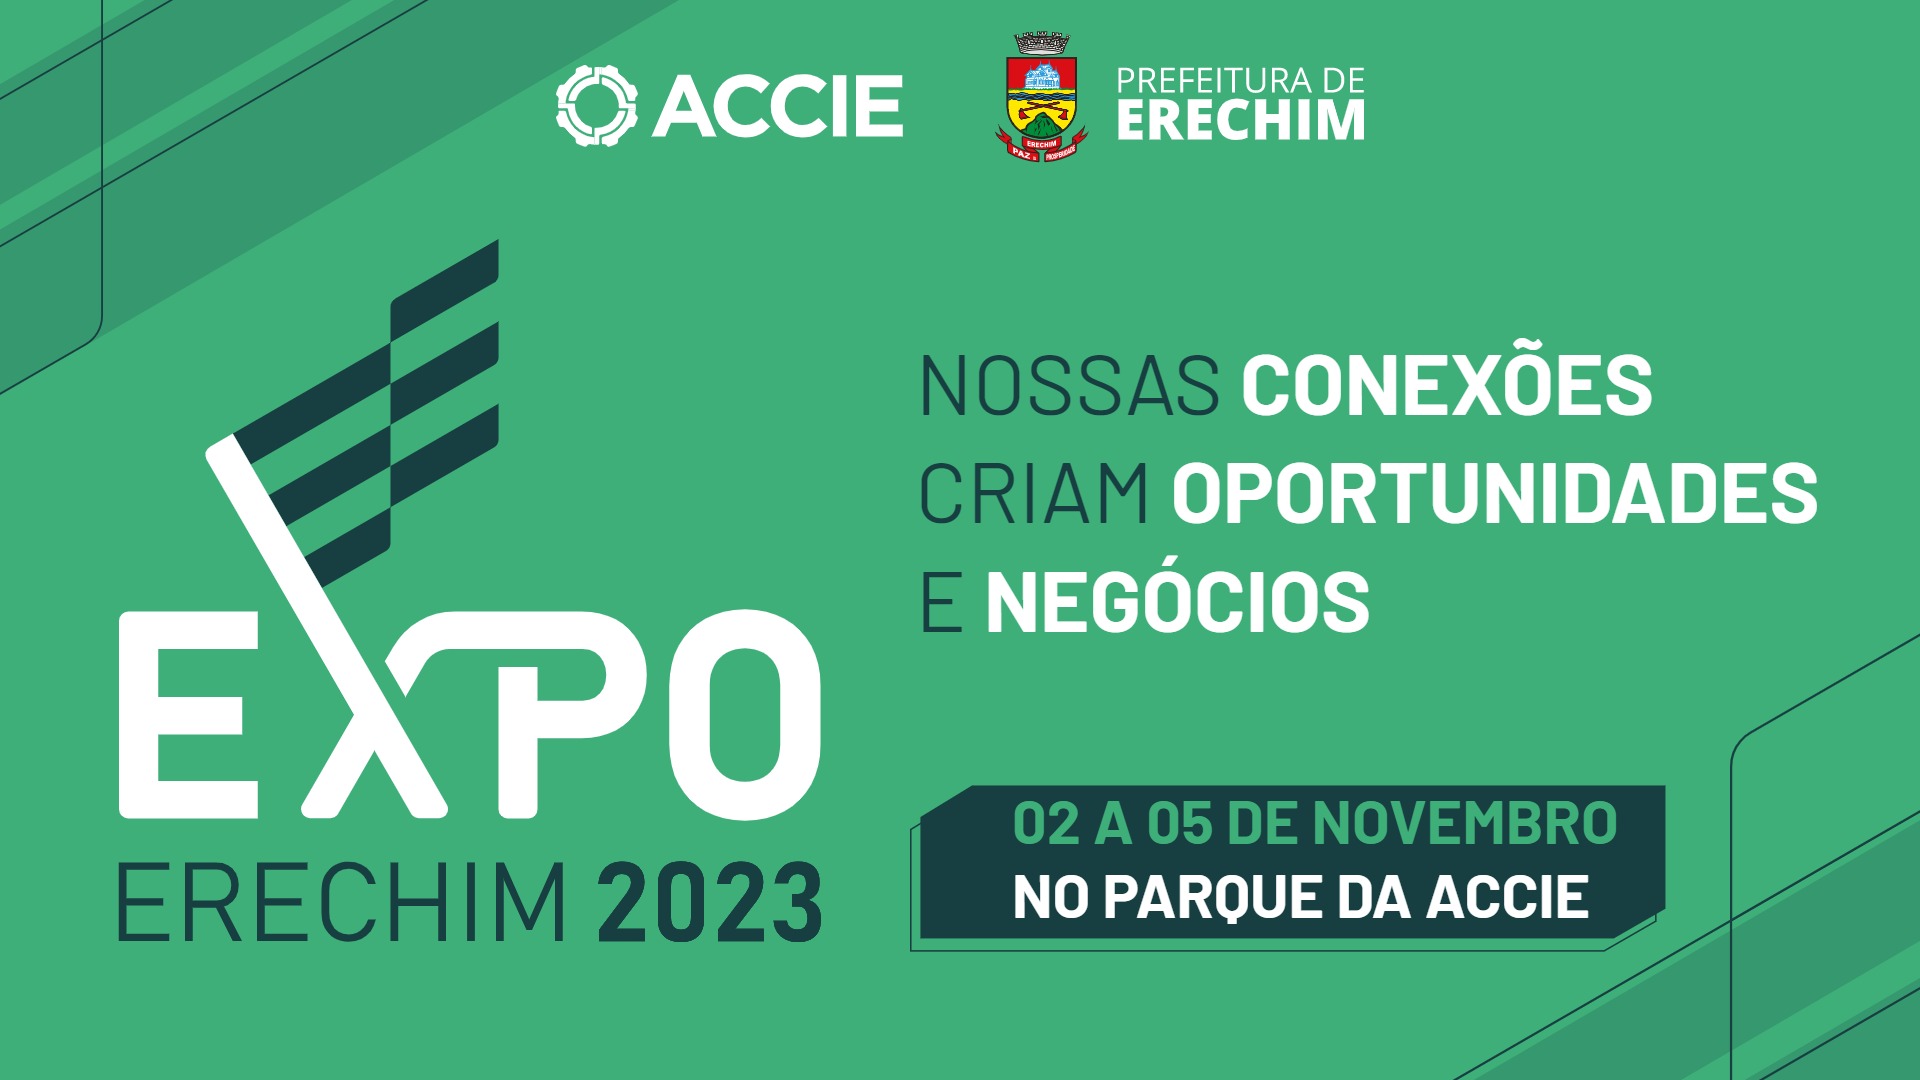 Expo Erechim 2023 e oficialmente lancada capa